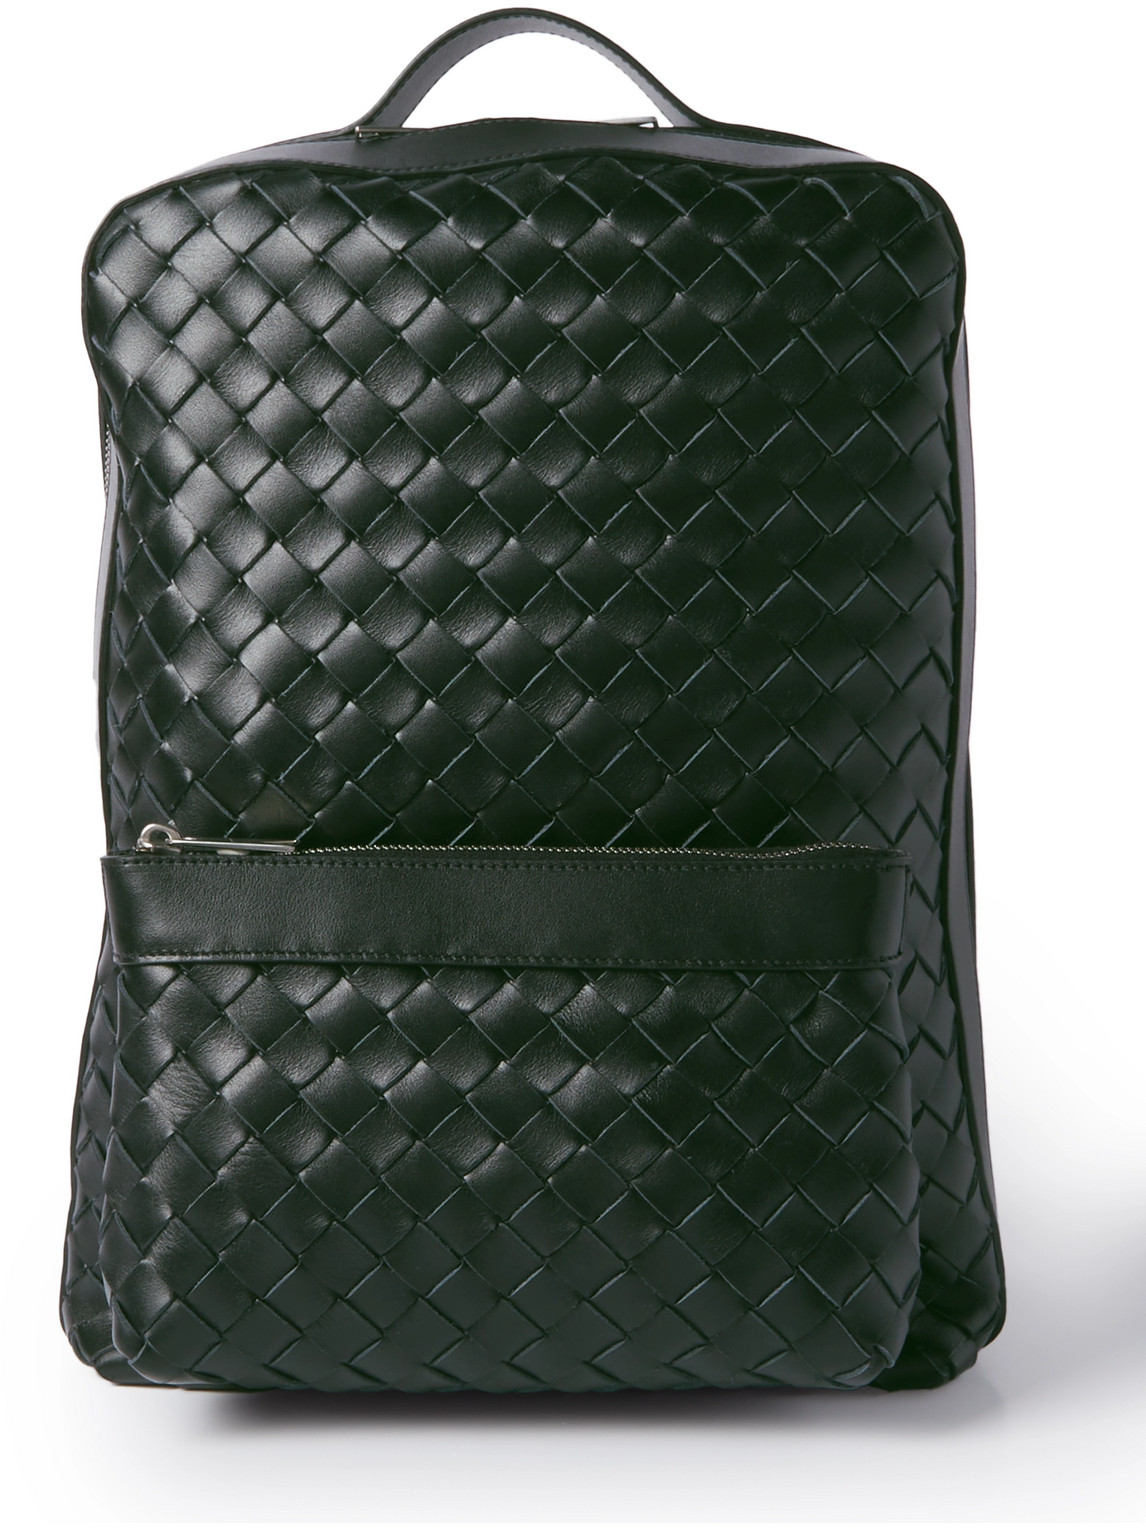 Bottega Veneta Small Intrecciato Leather Backpack In Green